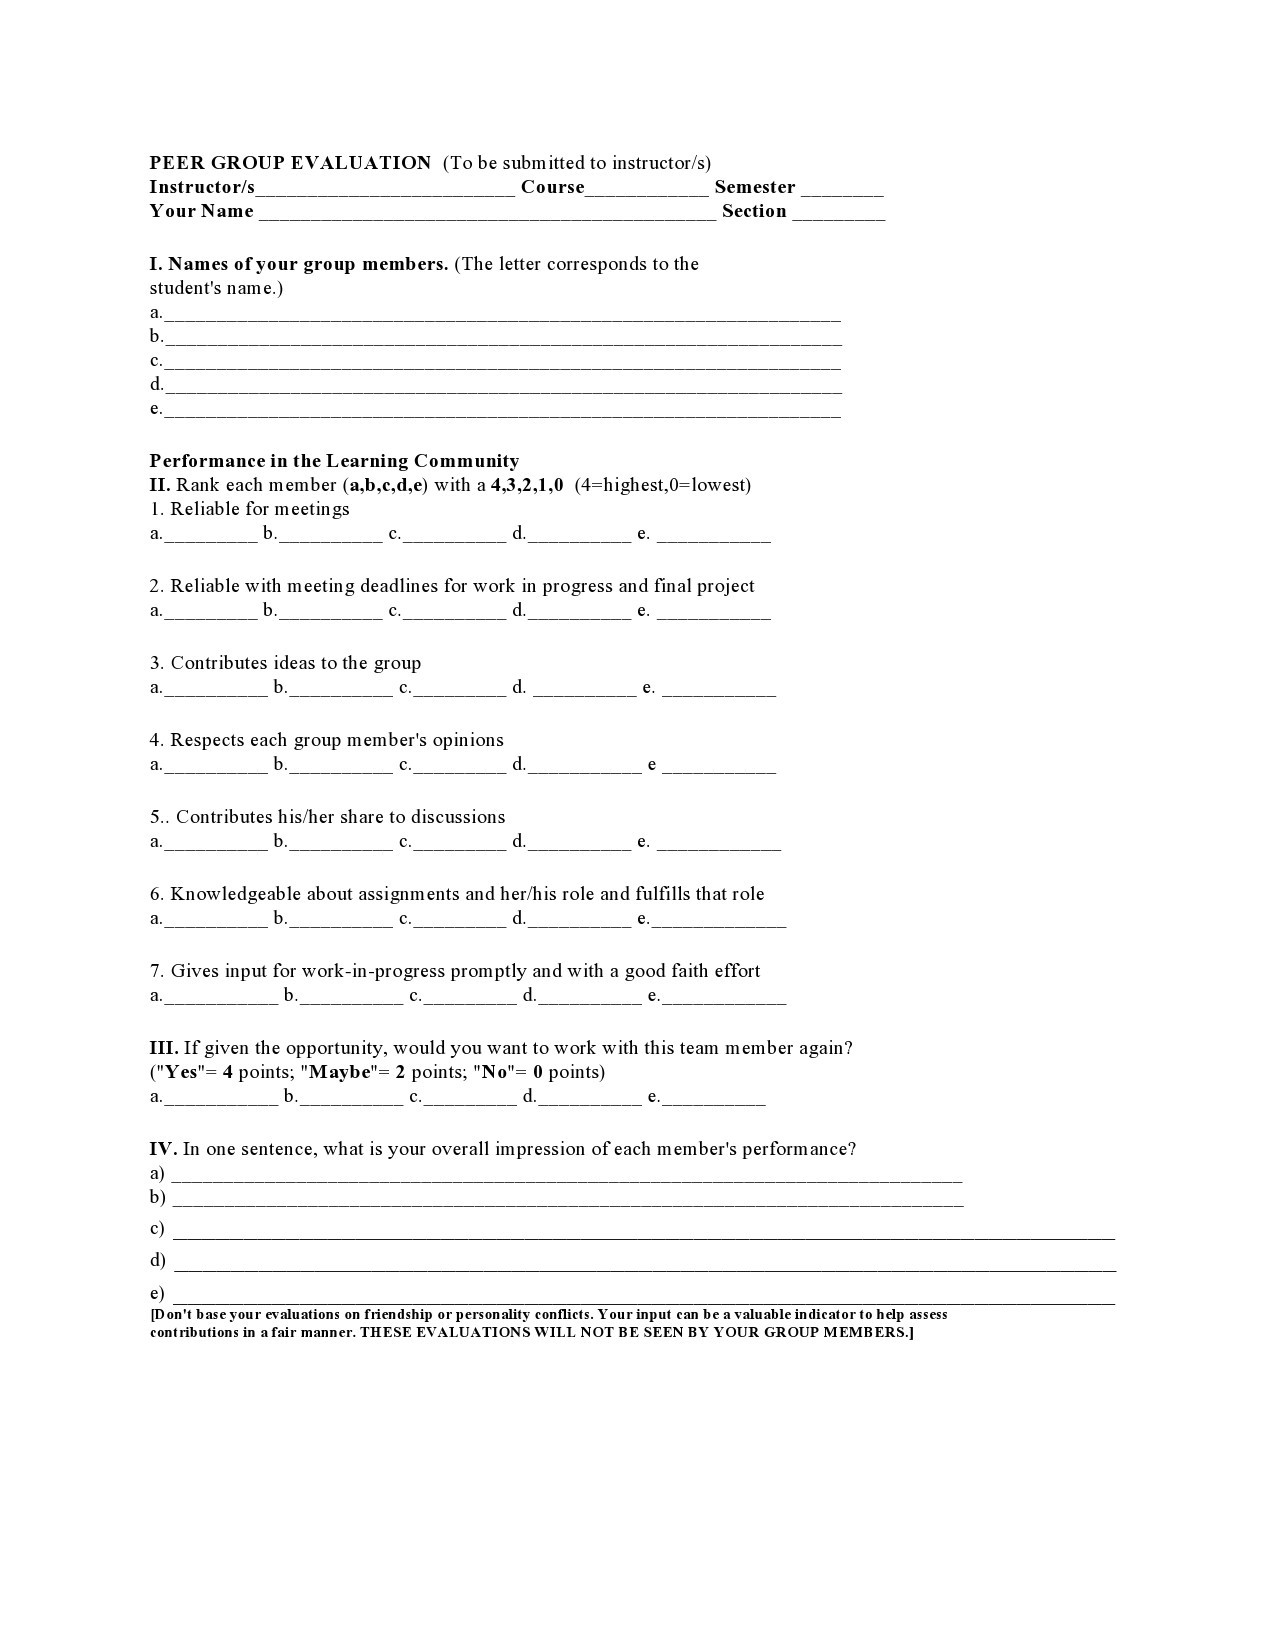 Free peer evaluation form 05